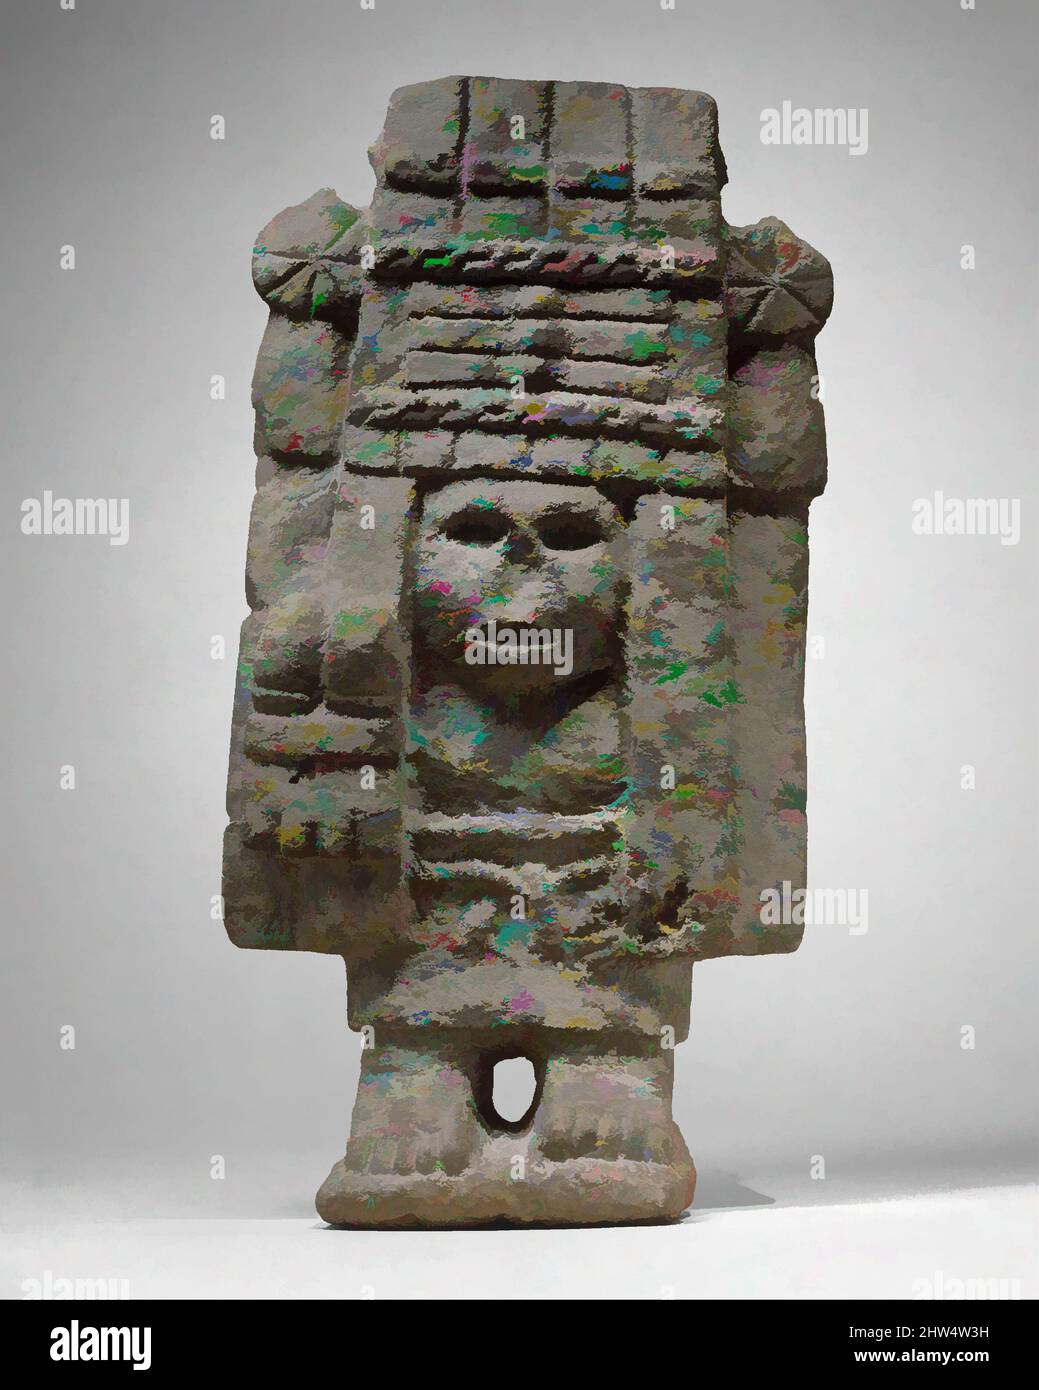 Arte ispirata da Maize Deity (Chicomecoatl), 15th–inizio 16th secolo, Messico, Mesoamerica, Aztec, Basalto, totale: 14 x 7 1/8 x 3 1/2 poll. (35,56 x 18,11 x 8,89 cm), Stone-Sculpture, tra le molte divinità femminili adorate dagli Aztechi, responsabili della fertilità agricola detenuti, opere classiche modernizzate da Artotop con un tuffo di modernità. Forme, colore e valore, impatto visivo accattivante sulle emozioni artistiche attraverso la libertà delle opere d'arte in modo contemporaneo. Un messaggio senza tempo che persegue una nuova direzione selvaggiamente creativa. Artisti che si rivolgono al supporto digitale e creano l'NFT Artotop Foto Stock